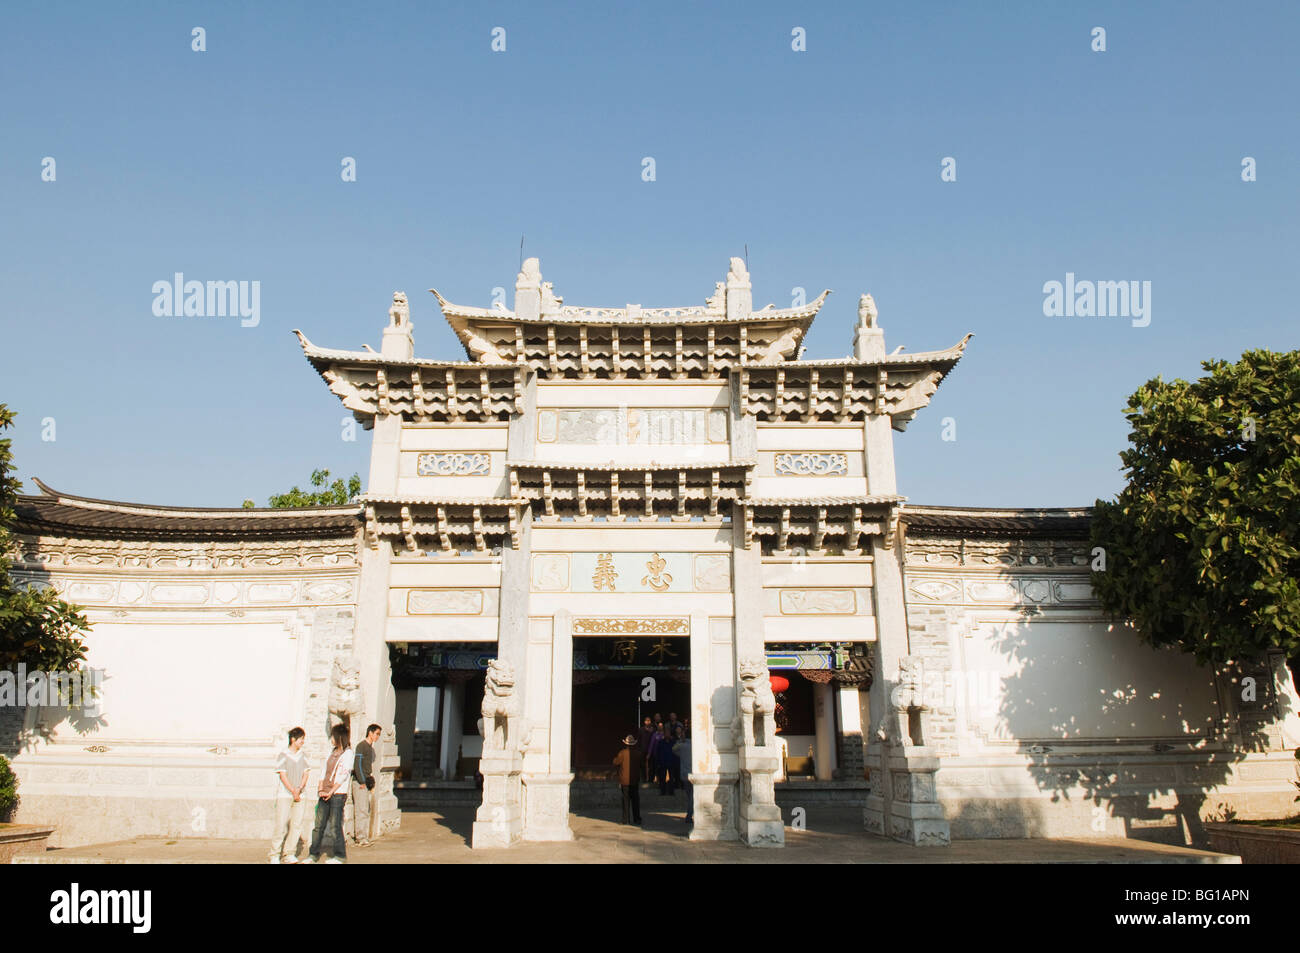 La porte de Temple 458 Middle longpan dans la vieille ville de Lijiang, Site du patrimoine mondial de l'UNESCO, la Province du Yunnan, Chine, Asie Banque D'Images